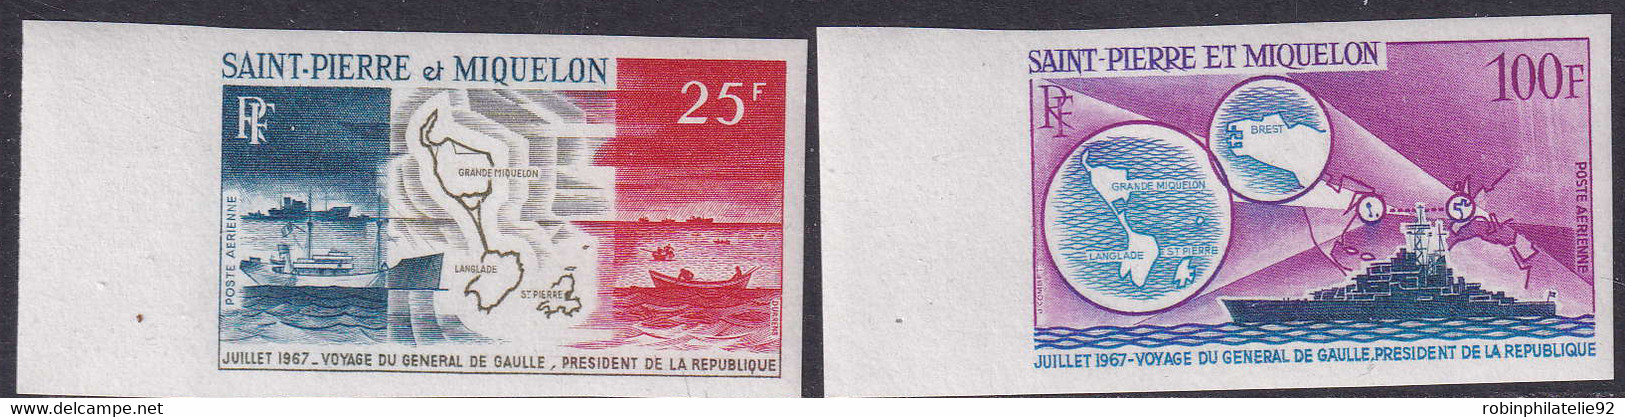 Saint Pierre Et Miquelon Non Dentelés Poste Aérienne N°38 /39 Voyage Du Général De Gaulle 2  Valeurs Qualité:** - Imperforates, Proofs & Errors